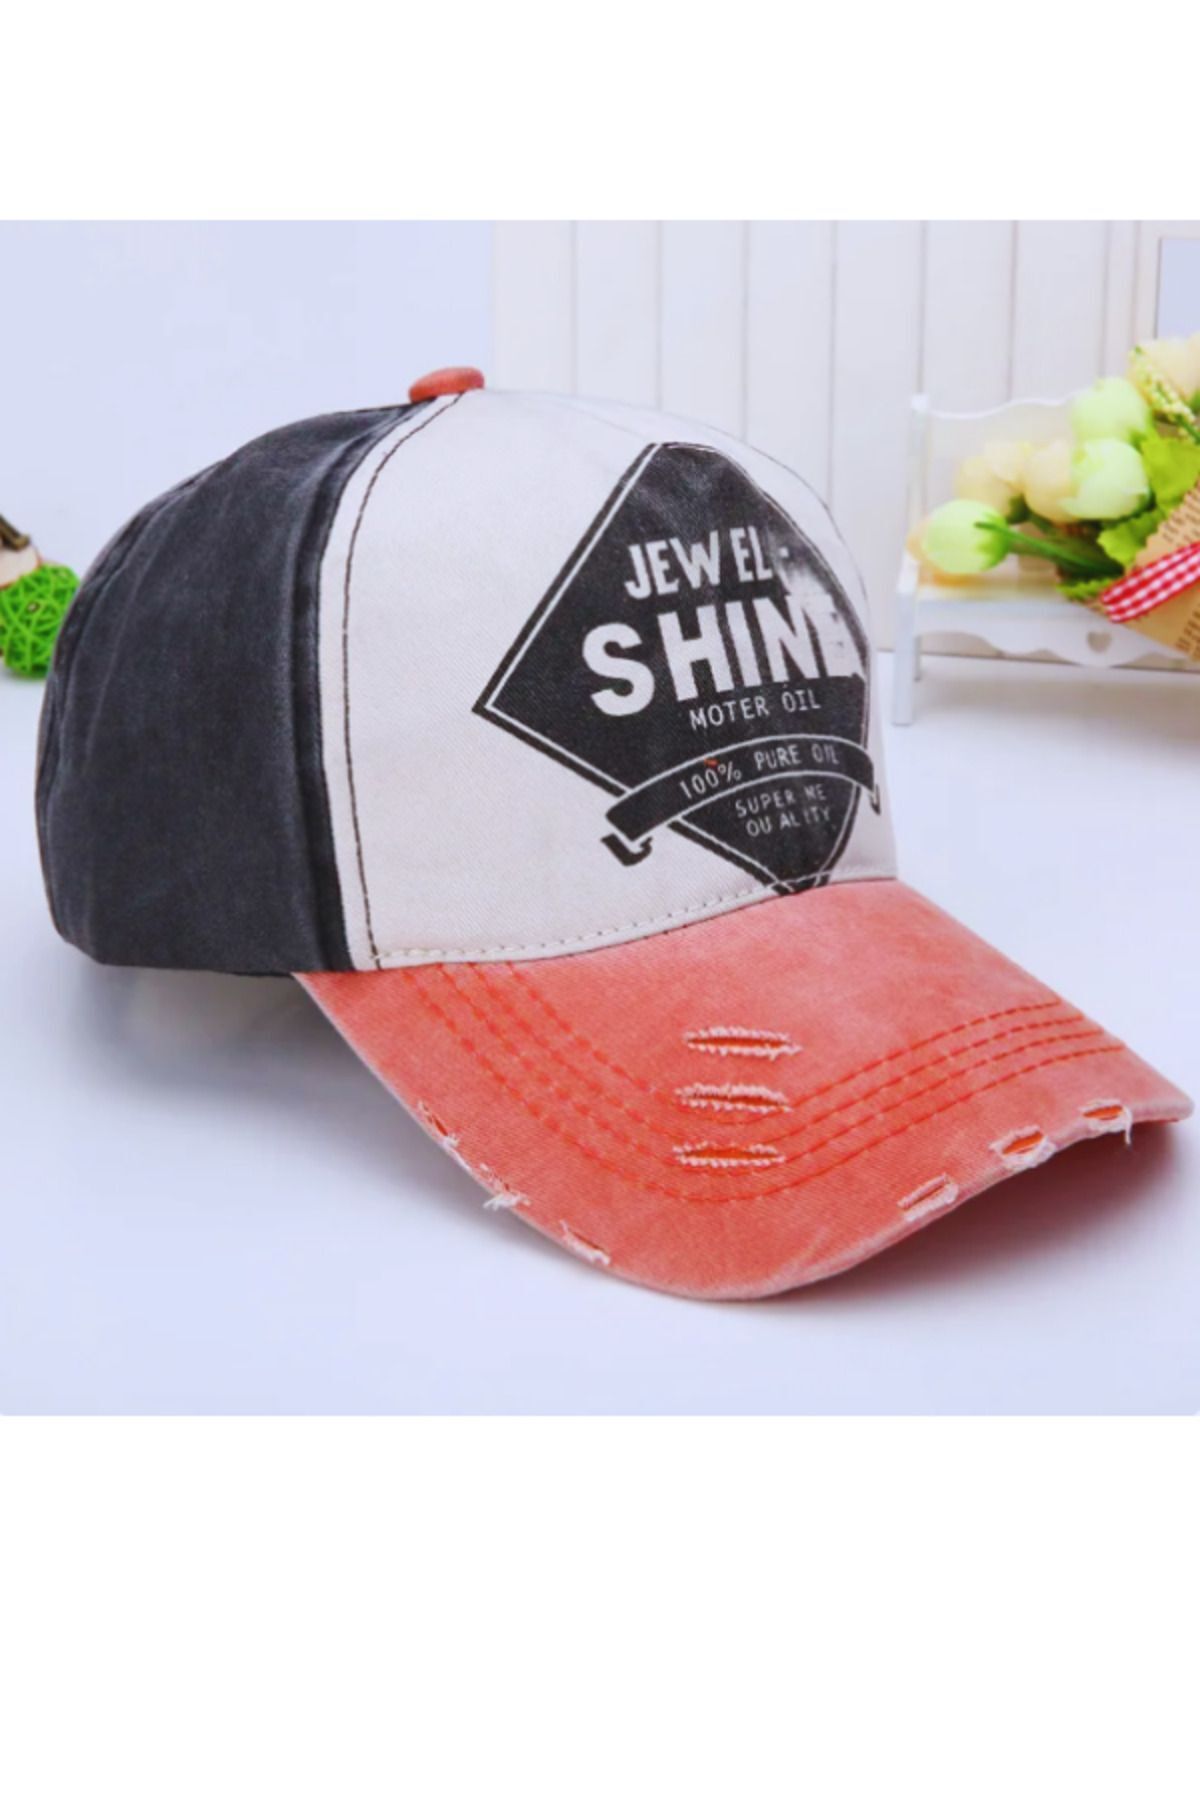 Shuttle Park İthal Unisex Eskitme Jewel Shine Gri Turuncu Tasarım Desenli Hat Şapka